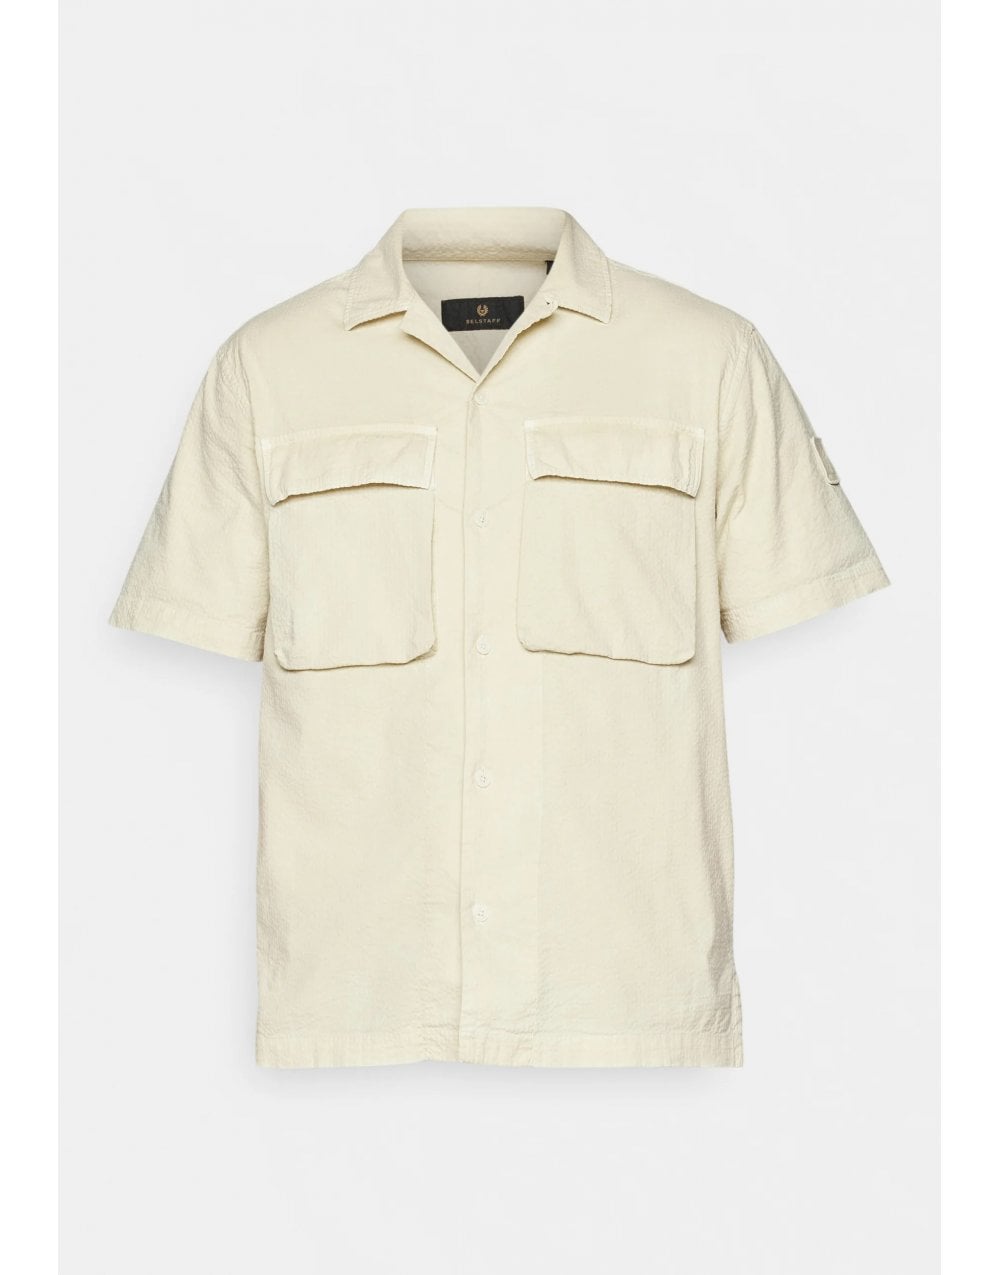 Belstaff Caster Short Sleeve Seersucker Shirt Col: Shell White